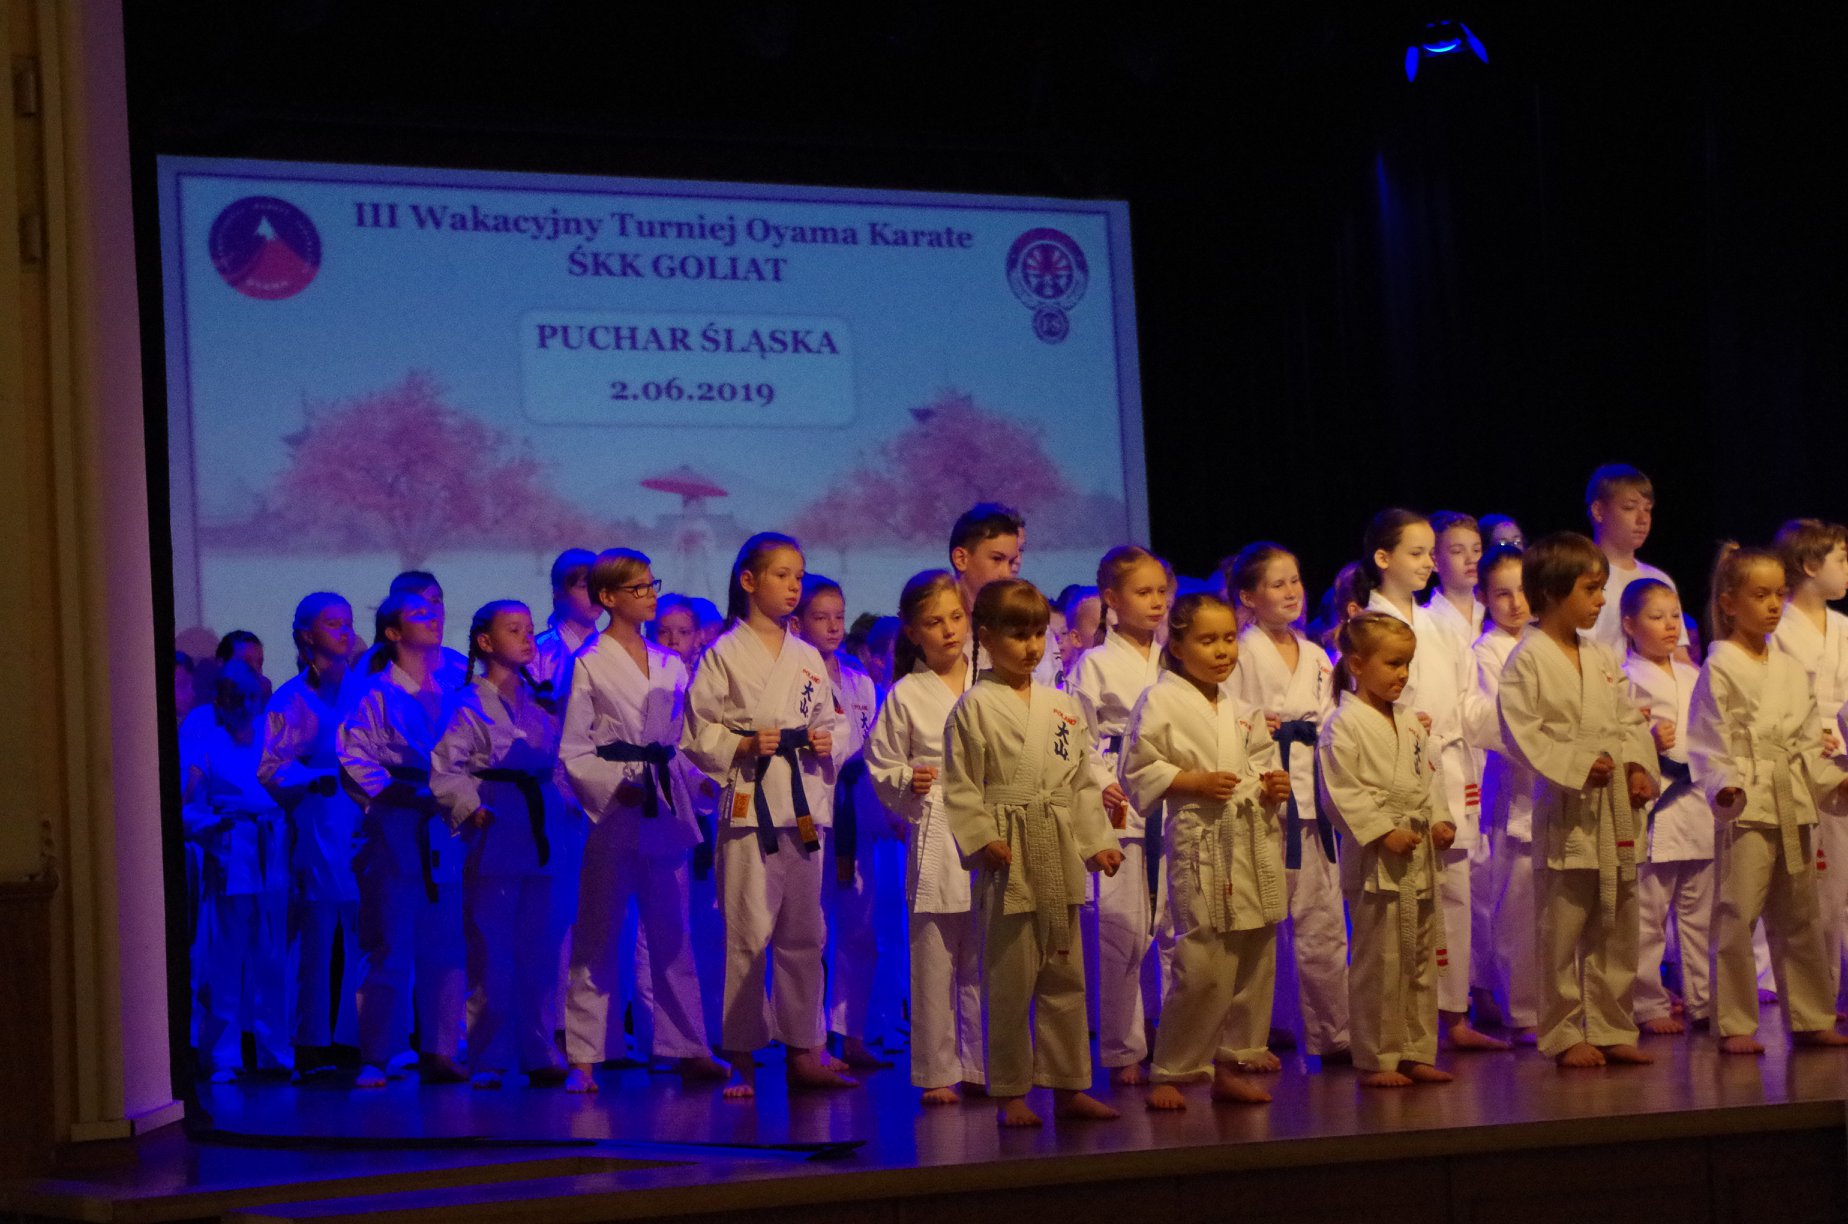 III Wakacyjny Turniej Oyama Karate Śląskiego Klubu Karate GOLIAT - Puchar Śląska